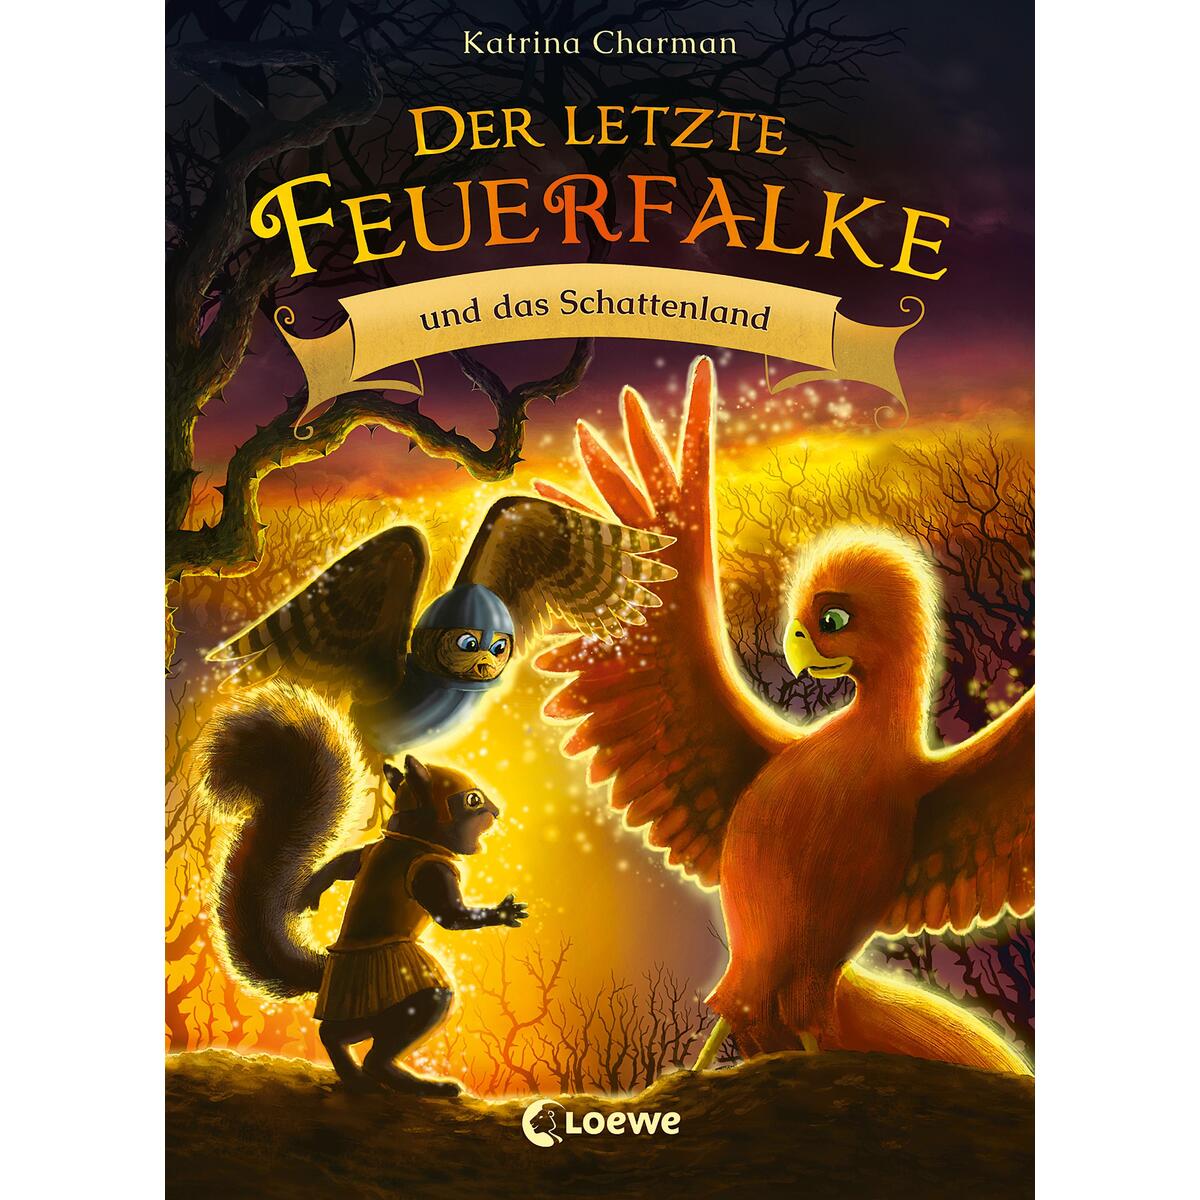 Der letzte Feuerfalke und das Schattenland (Band 5) von Loewe Verlag GmbH